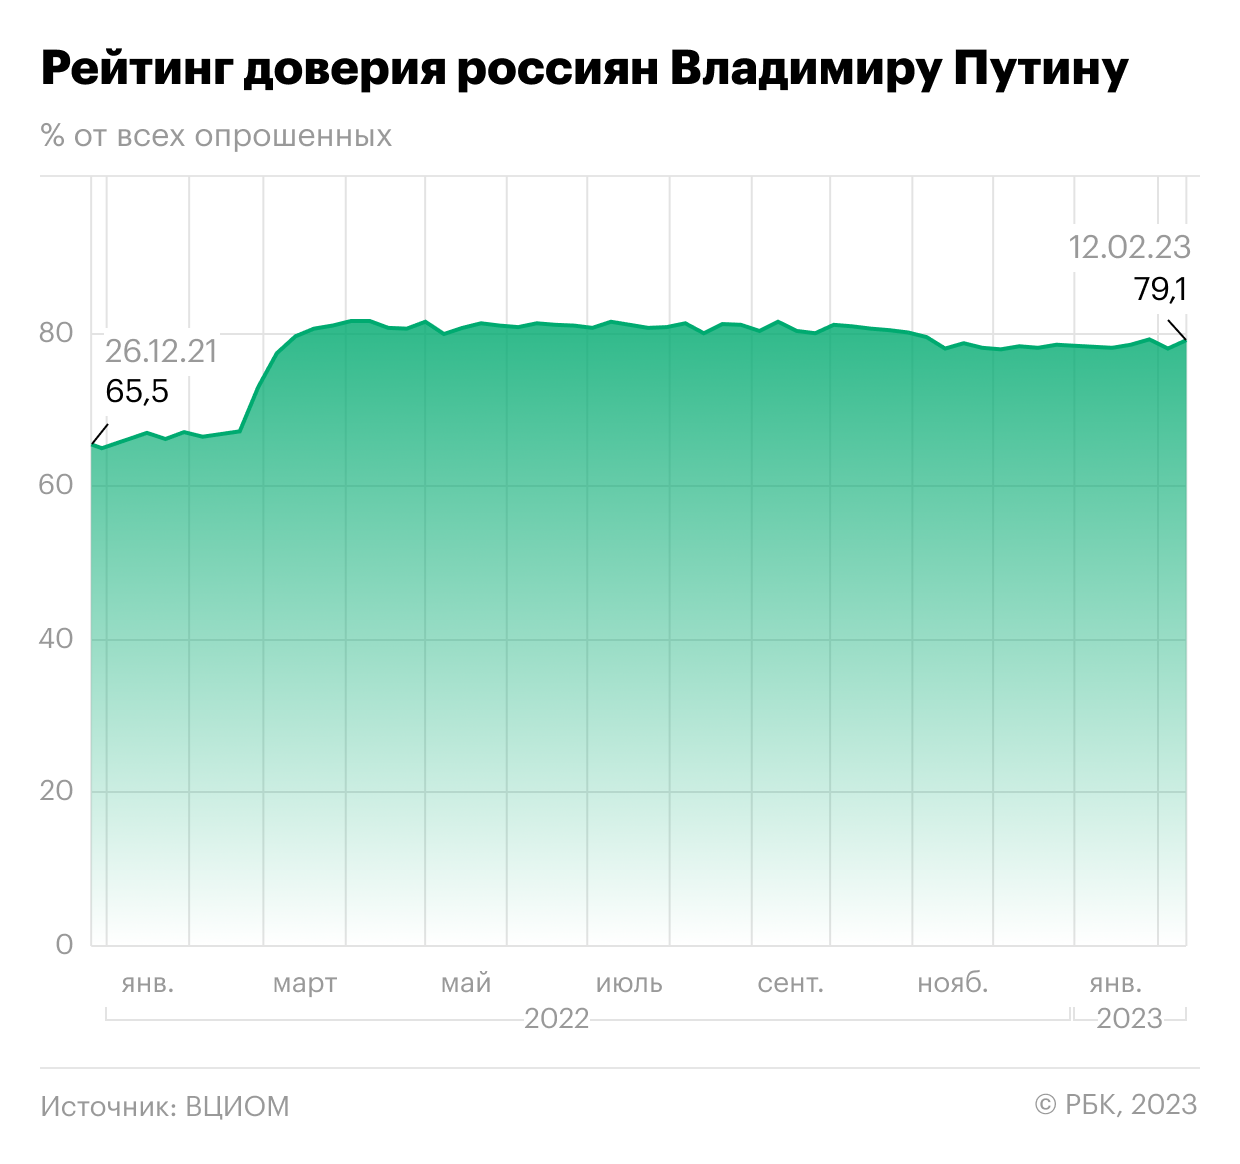 Рейтинг Путина за 2023. Уровень рейтинг Путина. Индикаторы цифровой экономики за 2022 год